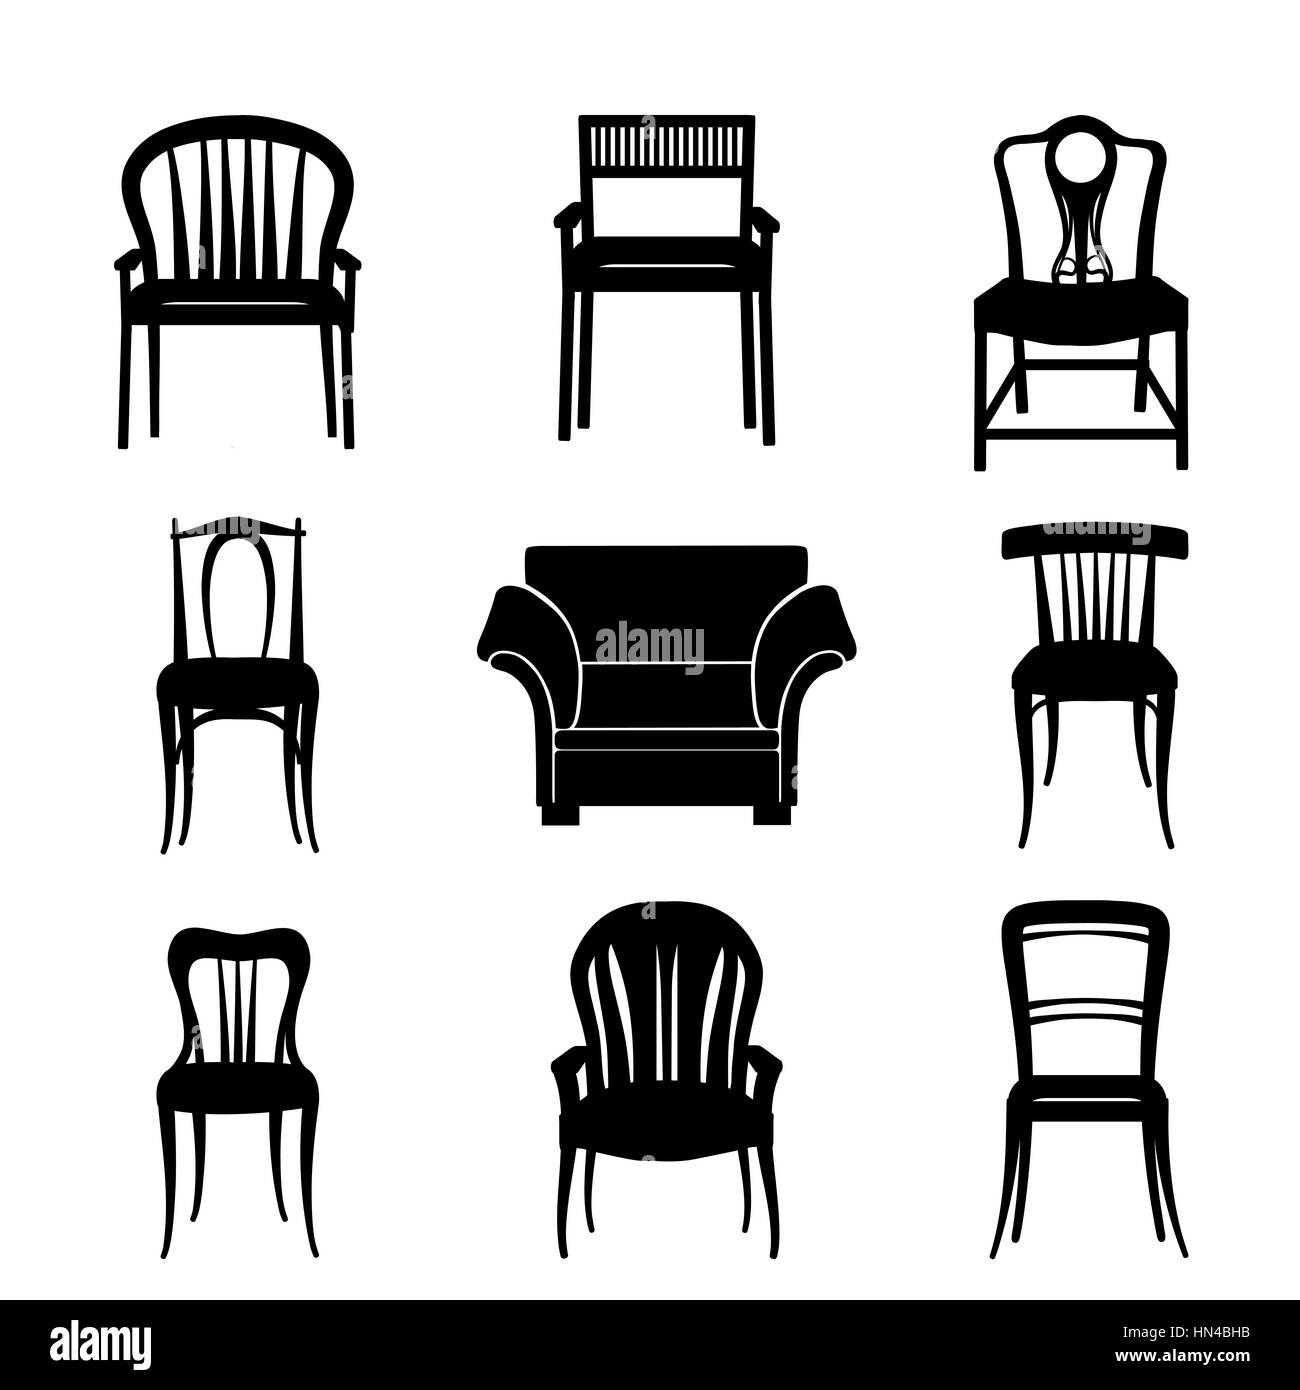 Fauteuil et chaise set silhouette en mobilier de style rétro collection  pour s'asseoir Image Vectorielle Stock - Alamy